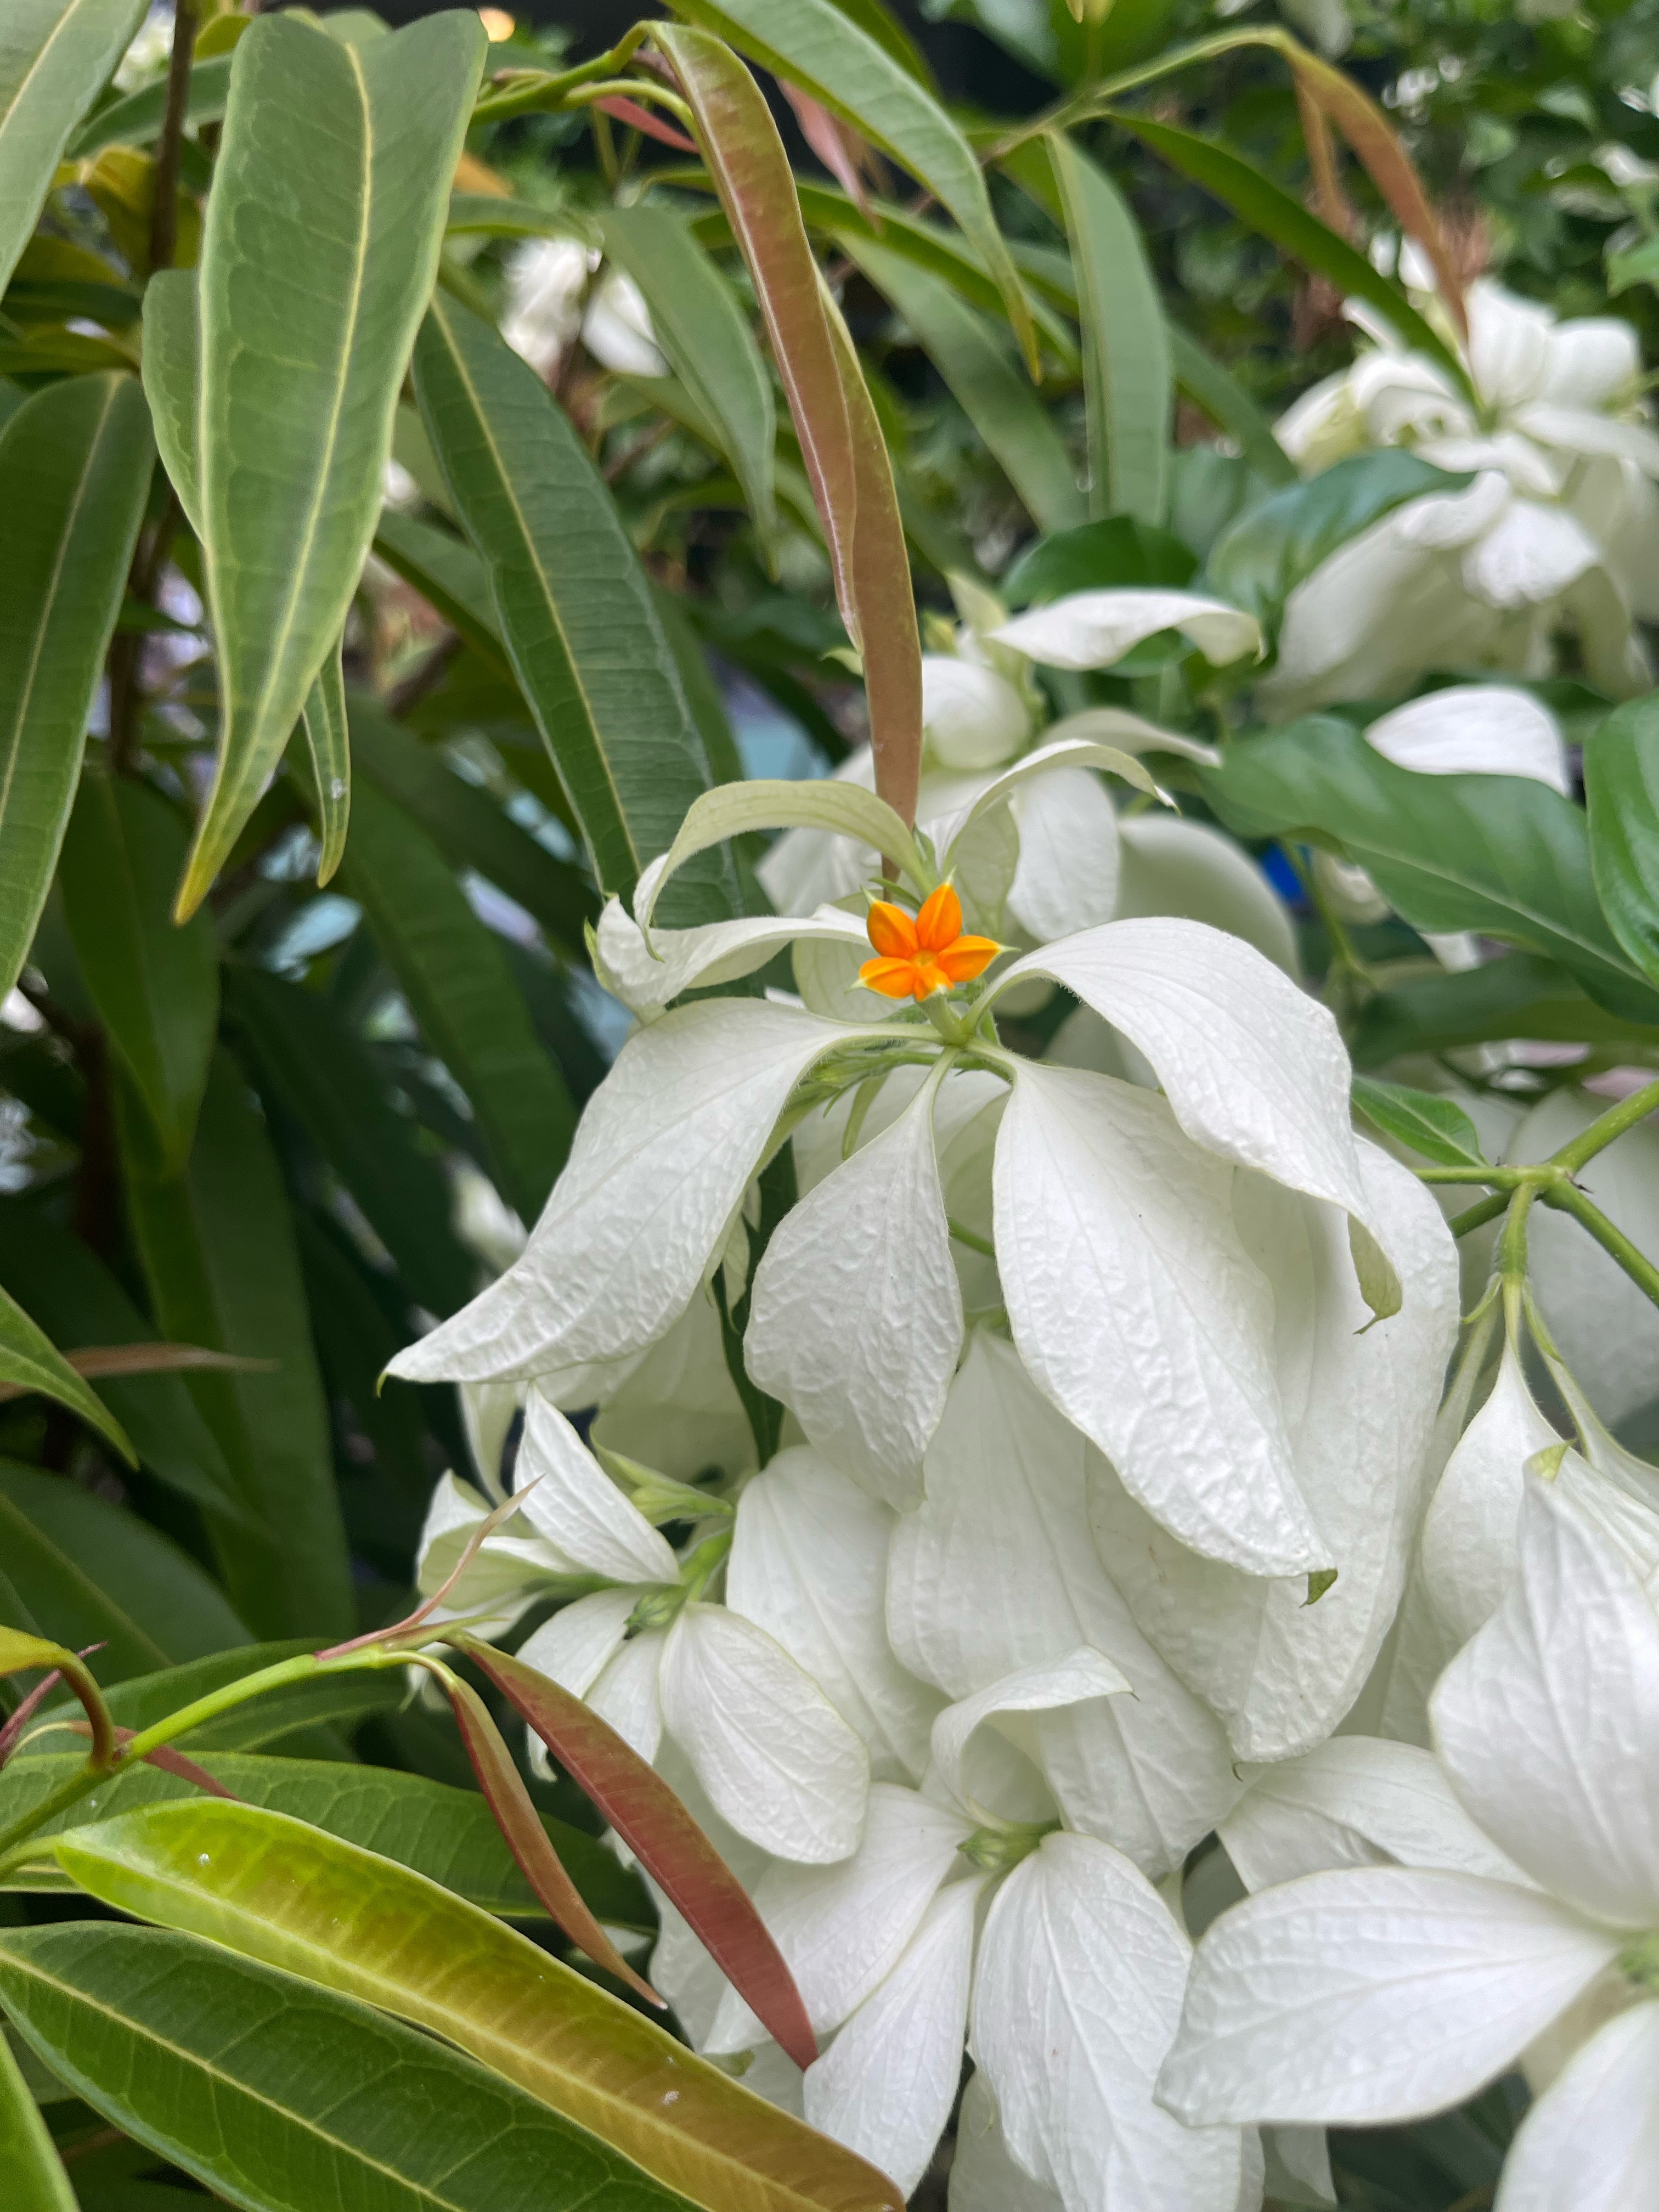 White dona flowers